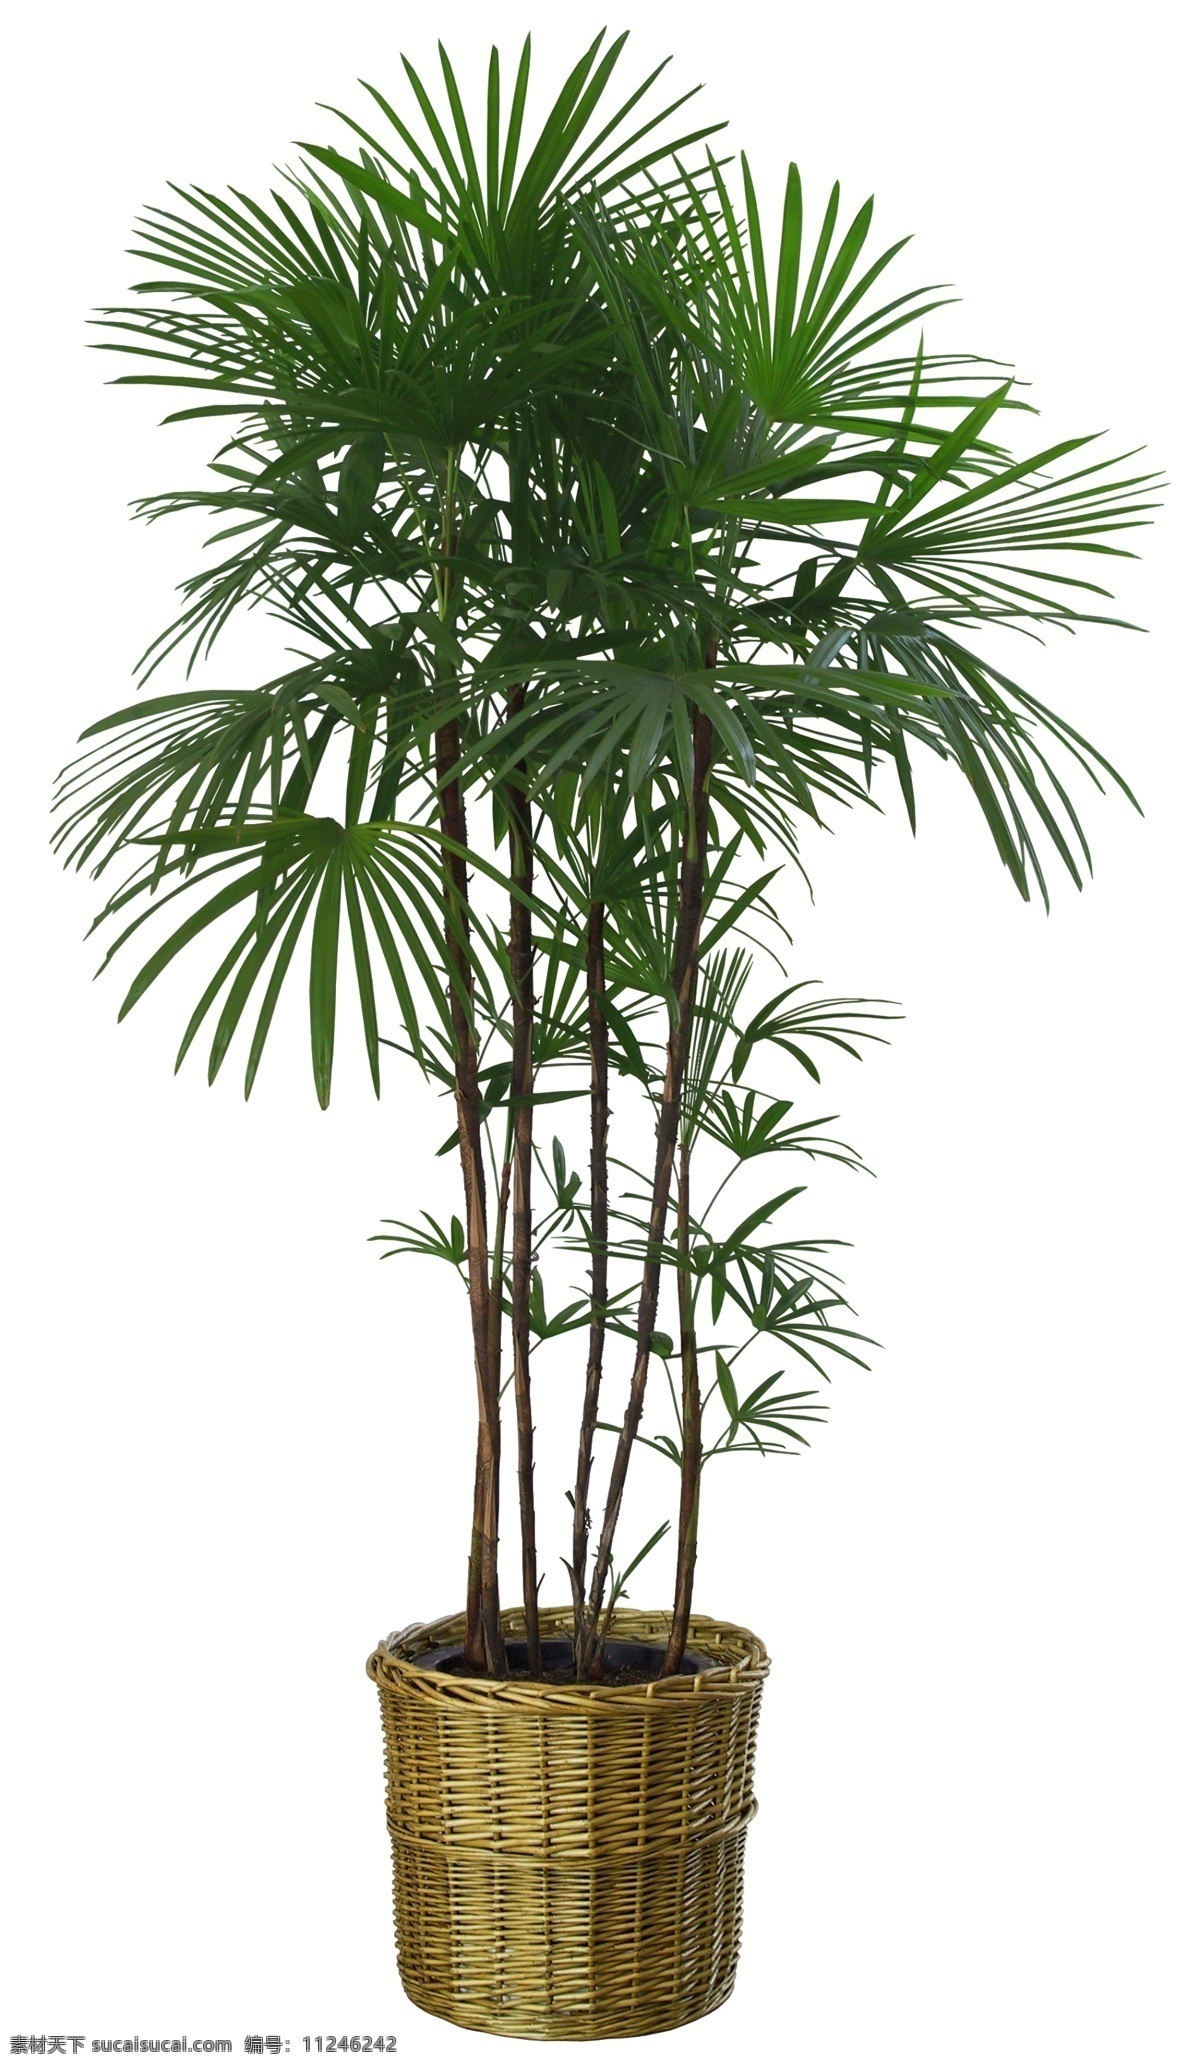 植物模型 3d模型 max模型 植物 max 模型 盆景 盆景模型 棕榈树 棕榈模型 室内植物 室内盆景 室外植物 植物贴图 效果图 后期 后期参考 后期素材 景观设计 环境设计 源文件